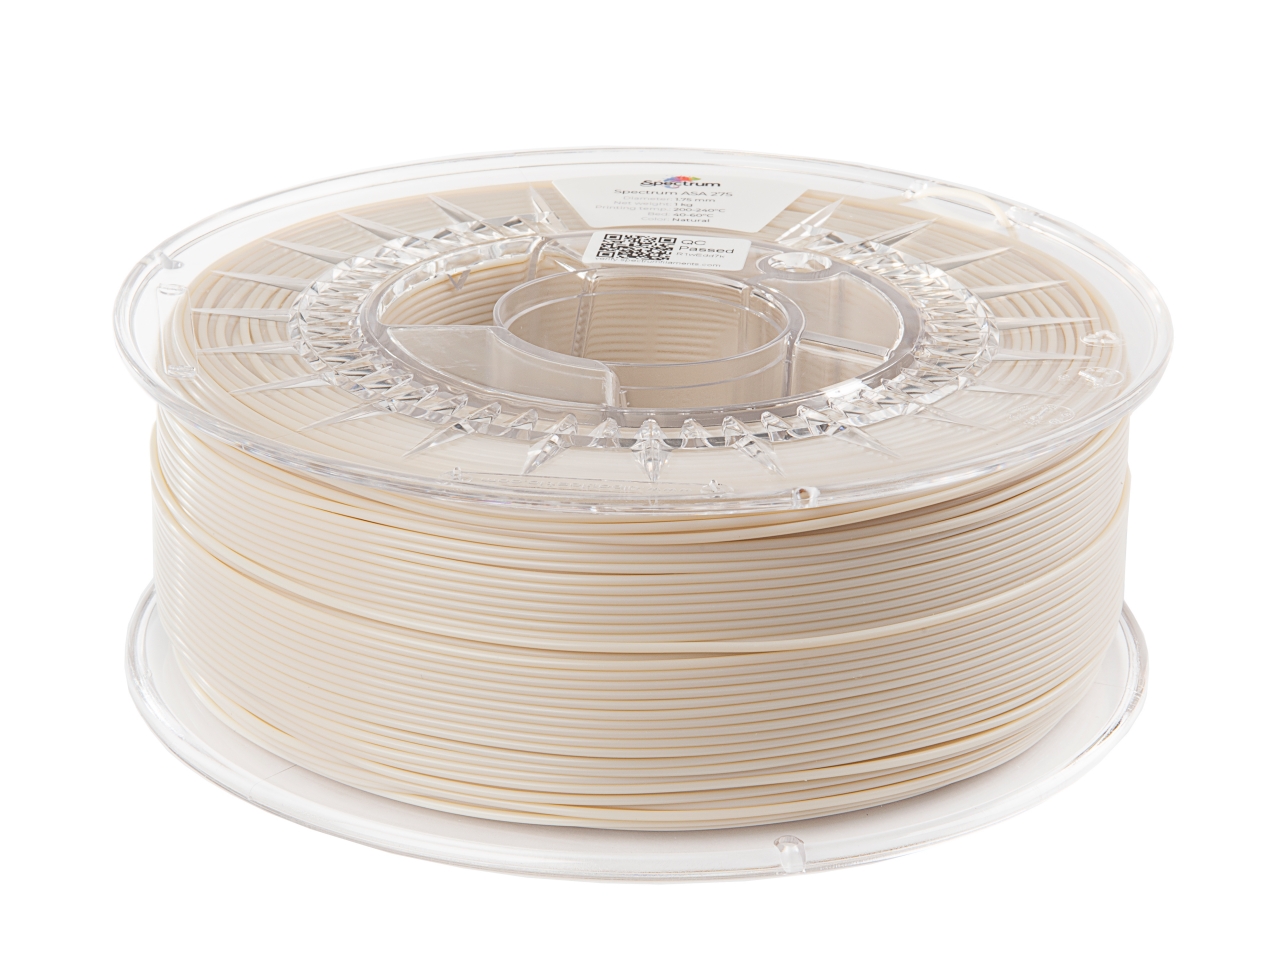 Filament ASA 275 Spectrum Blanc polaire 1kg - Polar White — Filimprimante3D